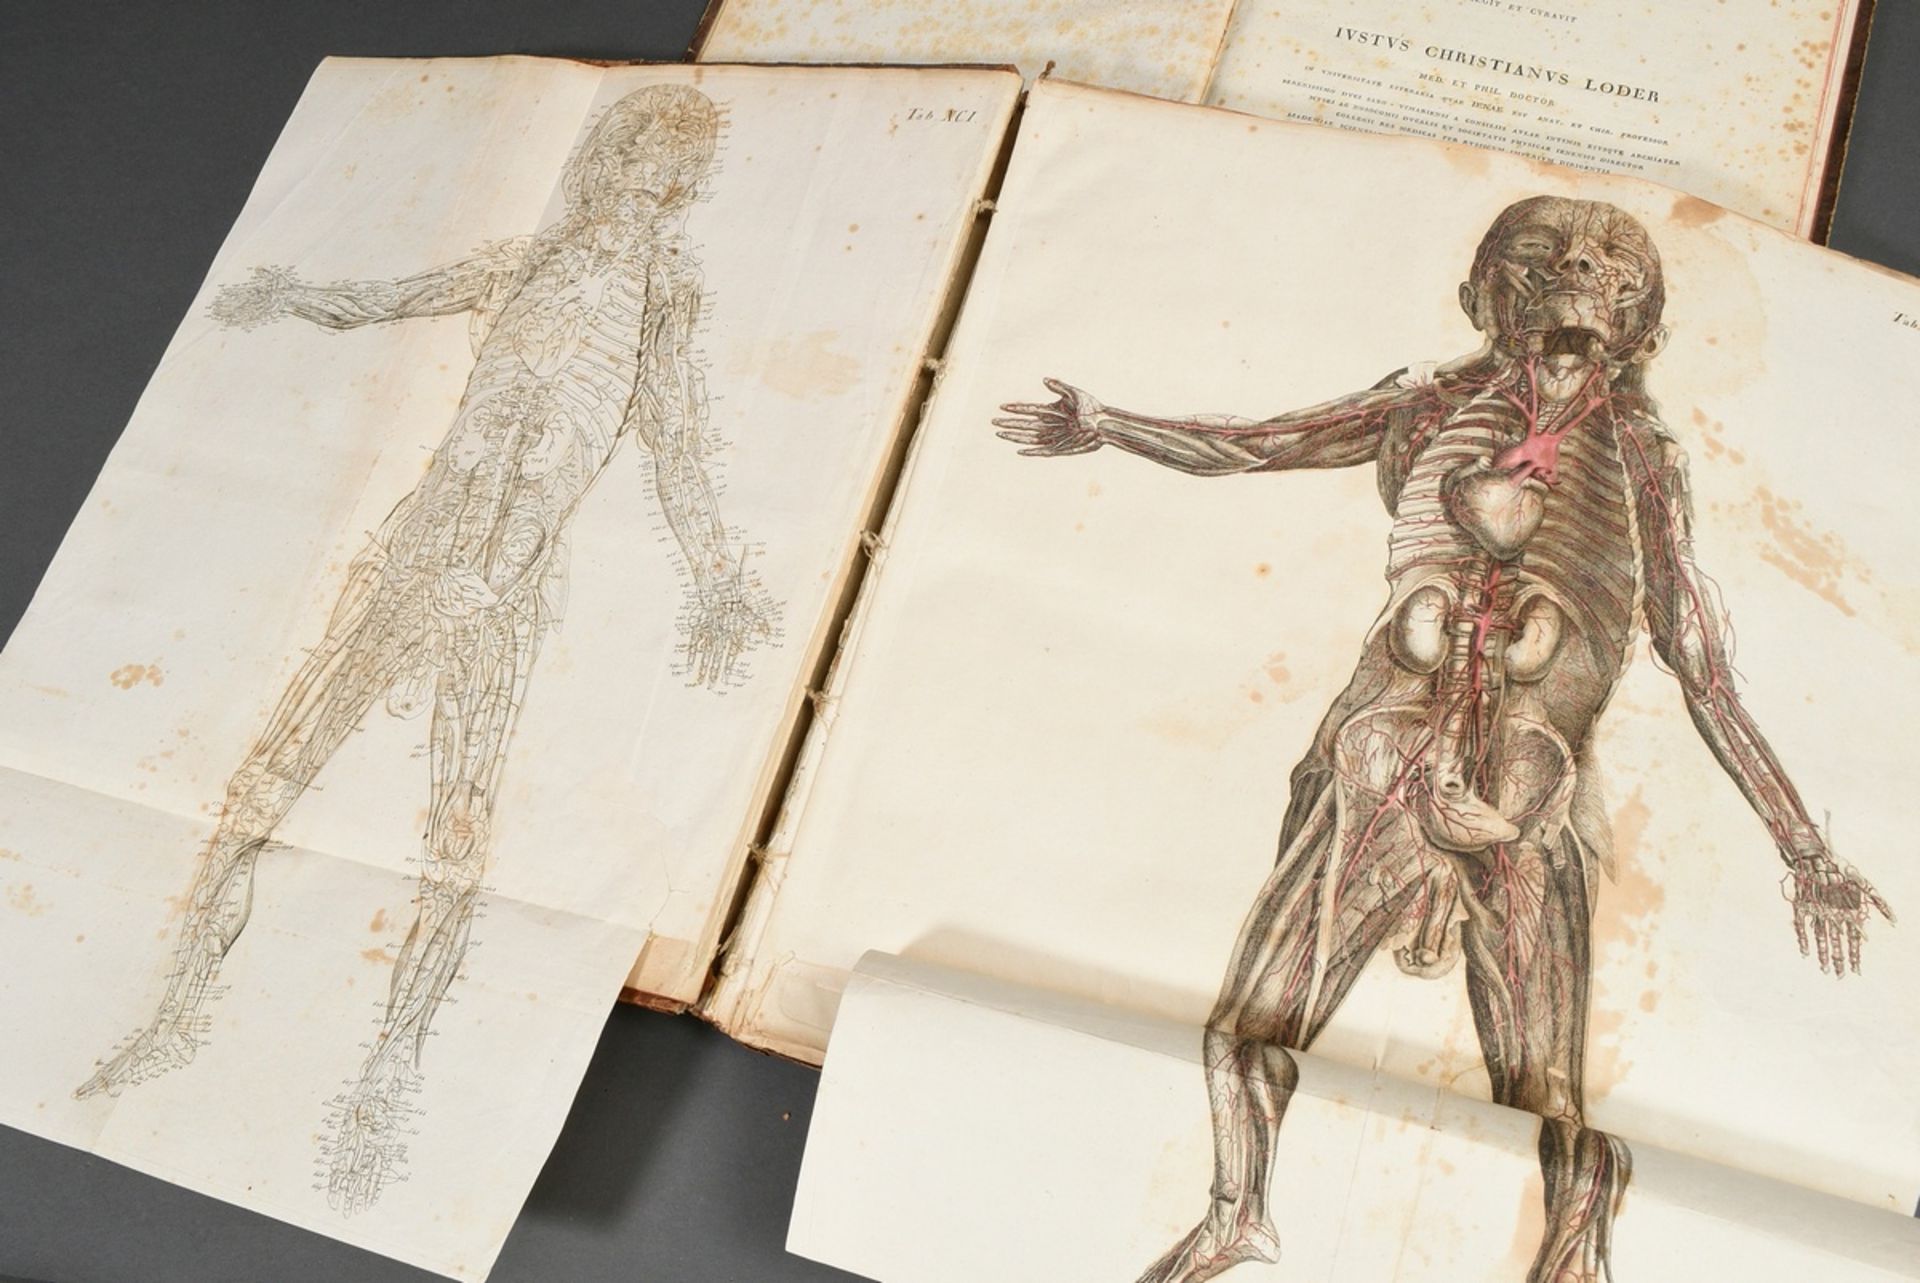 2 Bände Justus Christian von Loder "Tabularum Anatomicarum/ Volumen I und II" 1803, Halbledereinban - Bild 5 aus 8